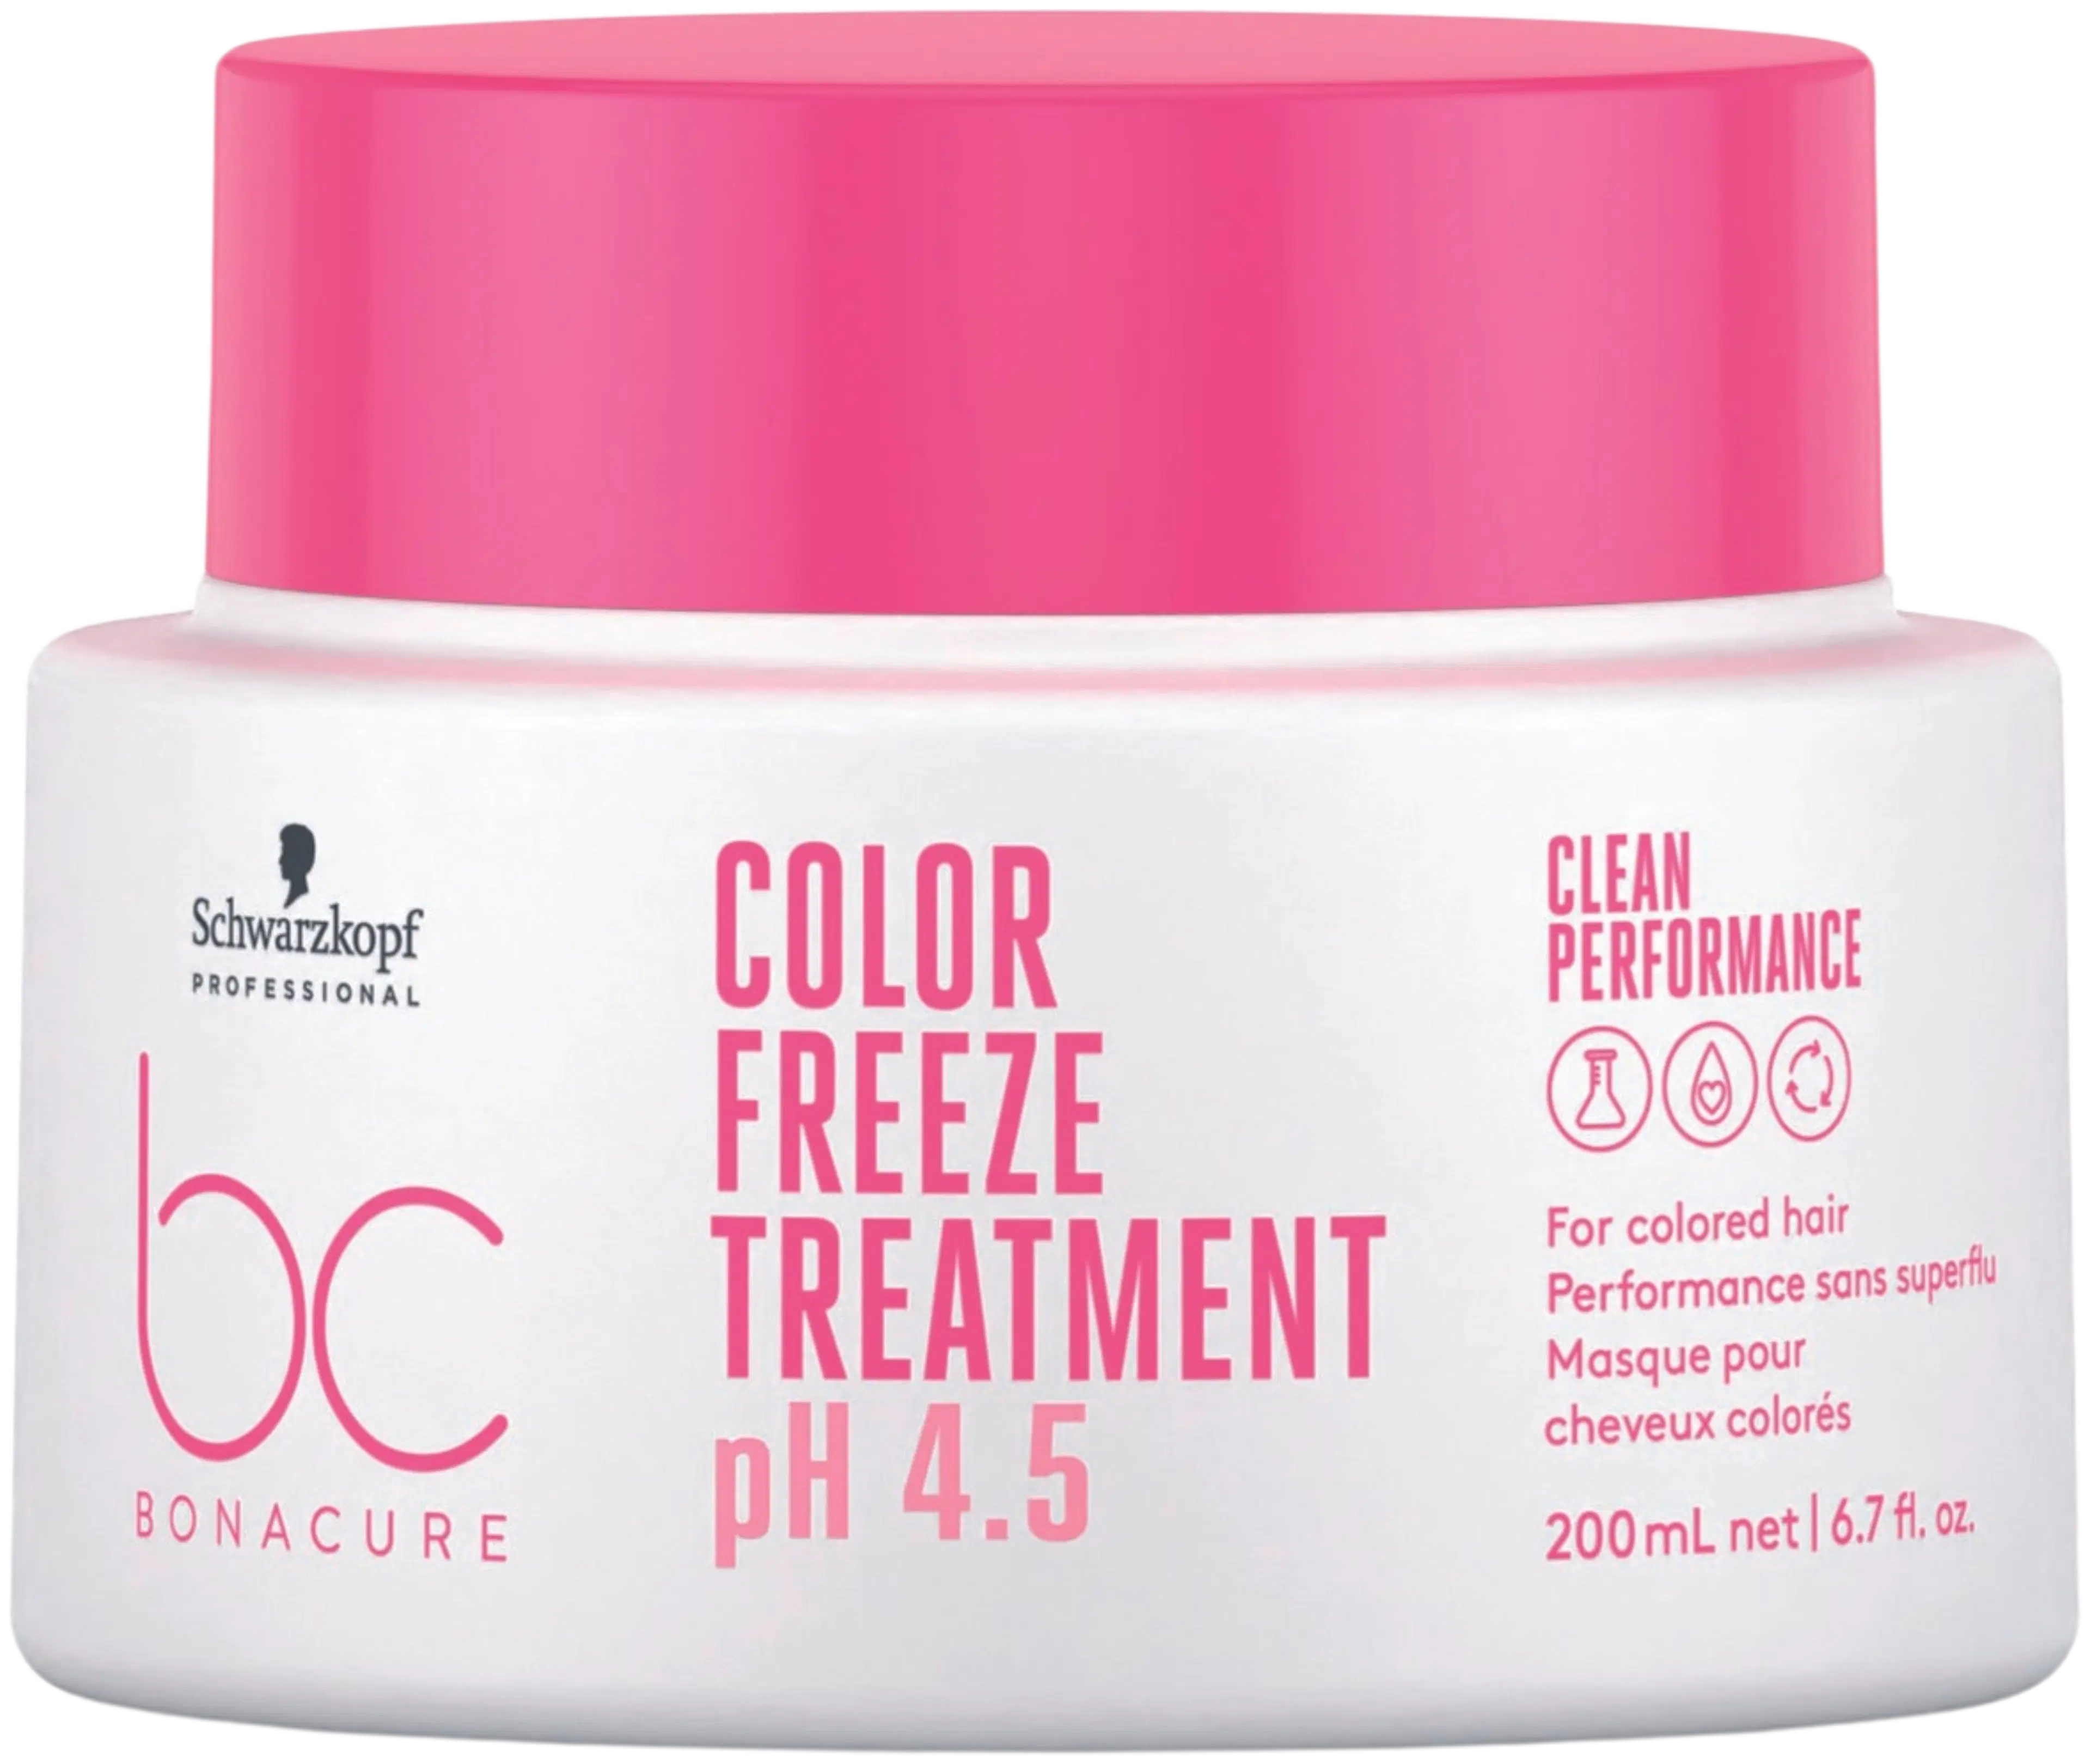 BC BONACURE Color Freeze Treatment 200ml